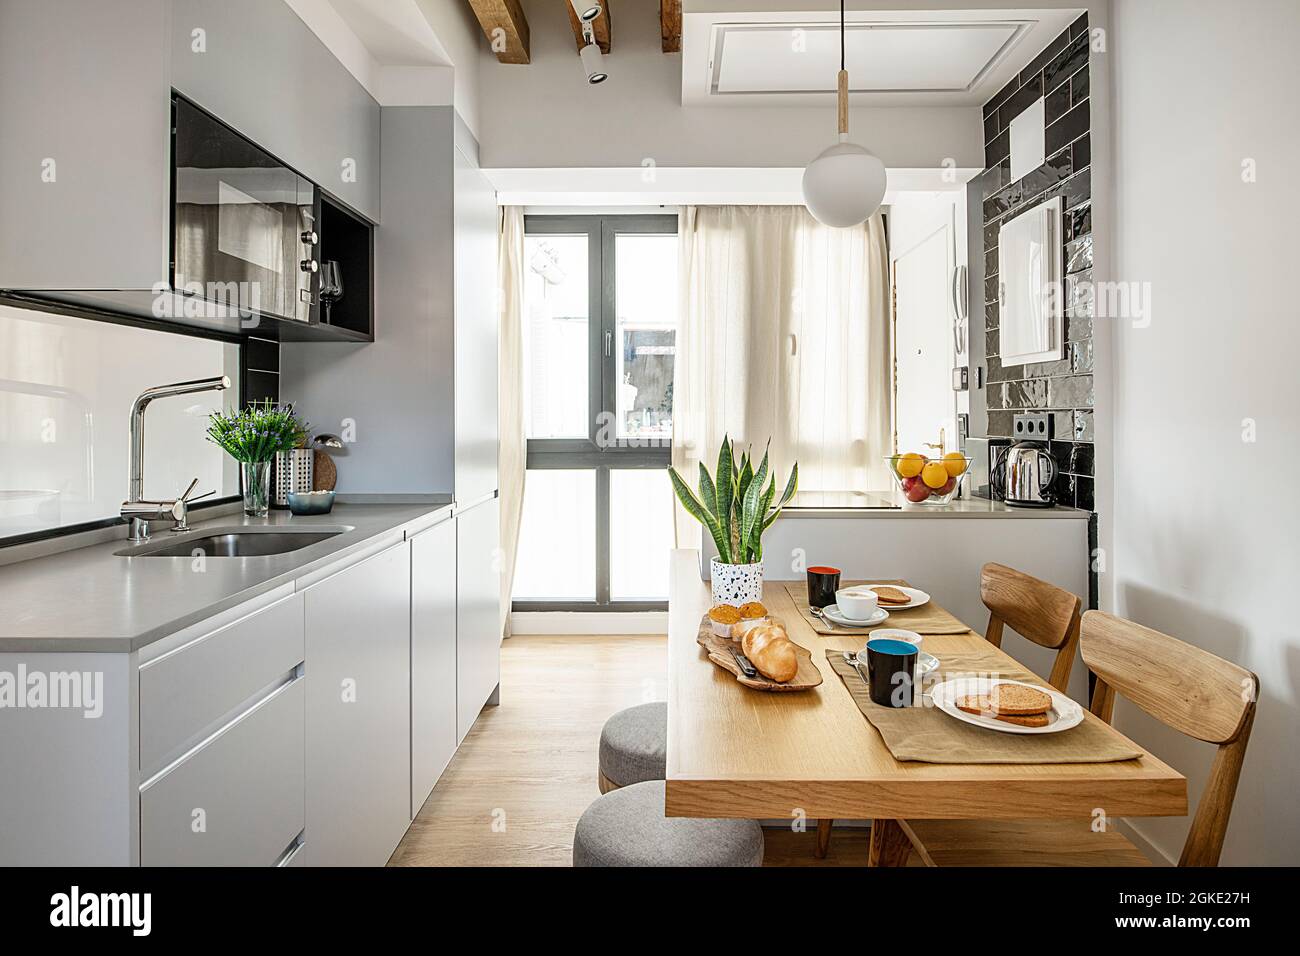 Cocina en pequeño apartamento de alquiler vacacional con el desayuno servido en la mesa del office con cafe, bollos y tostadas. Stock Photo